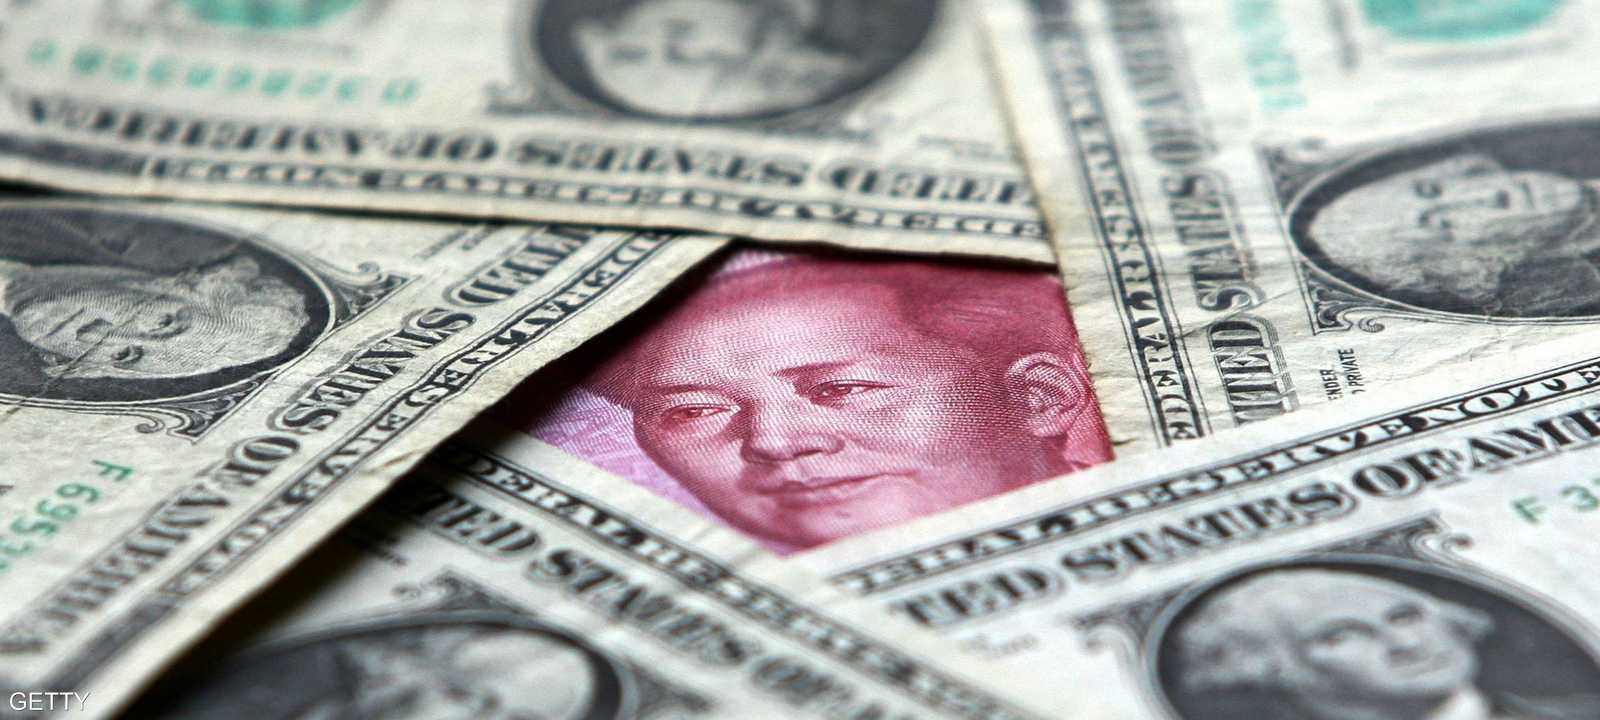 التنين الصيني يصعد الحرب للتغلب على ضرائب ترامب